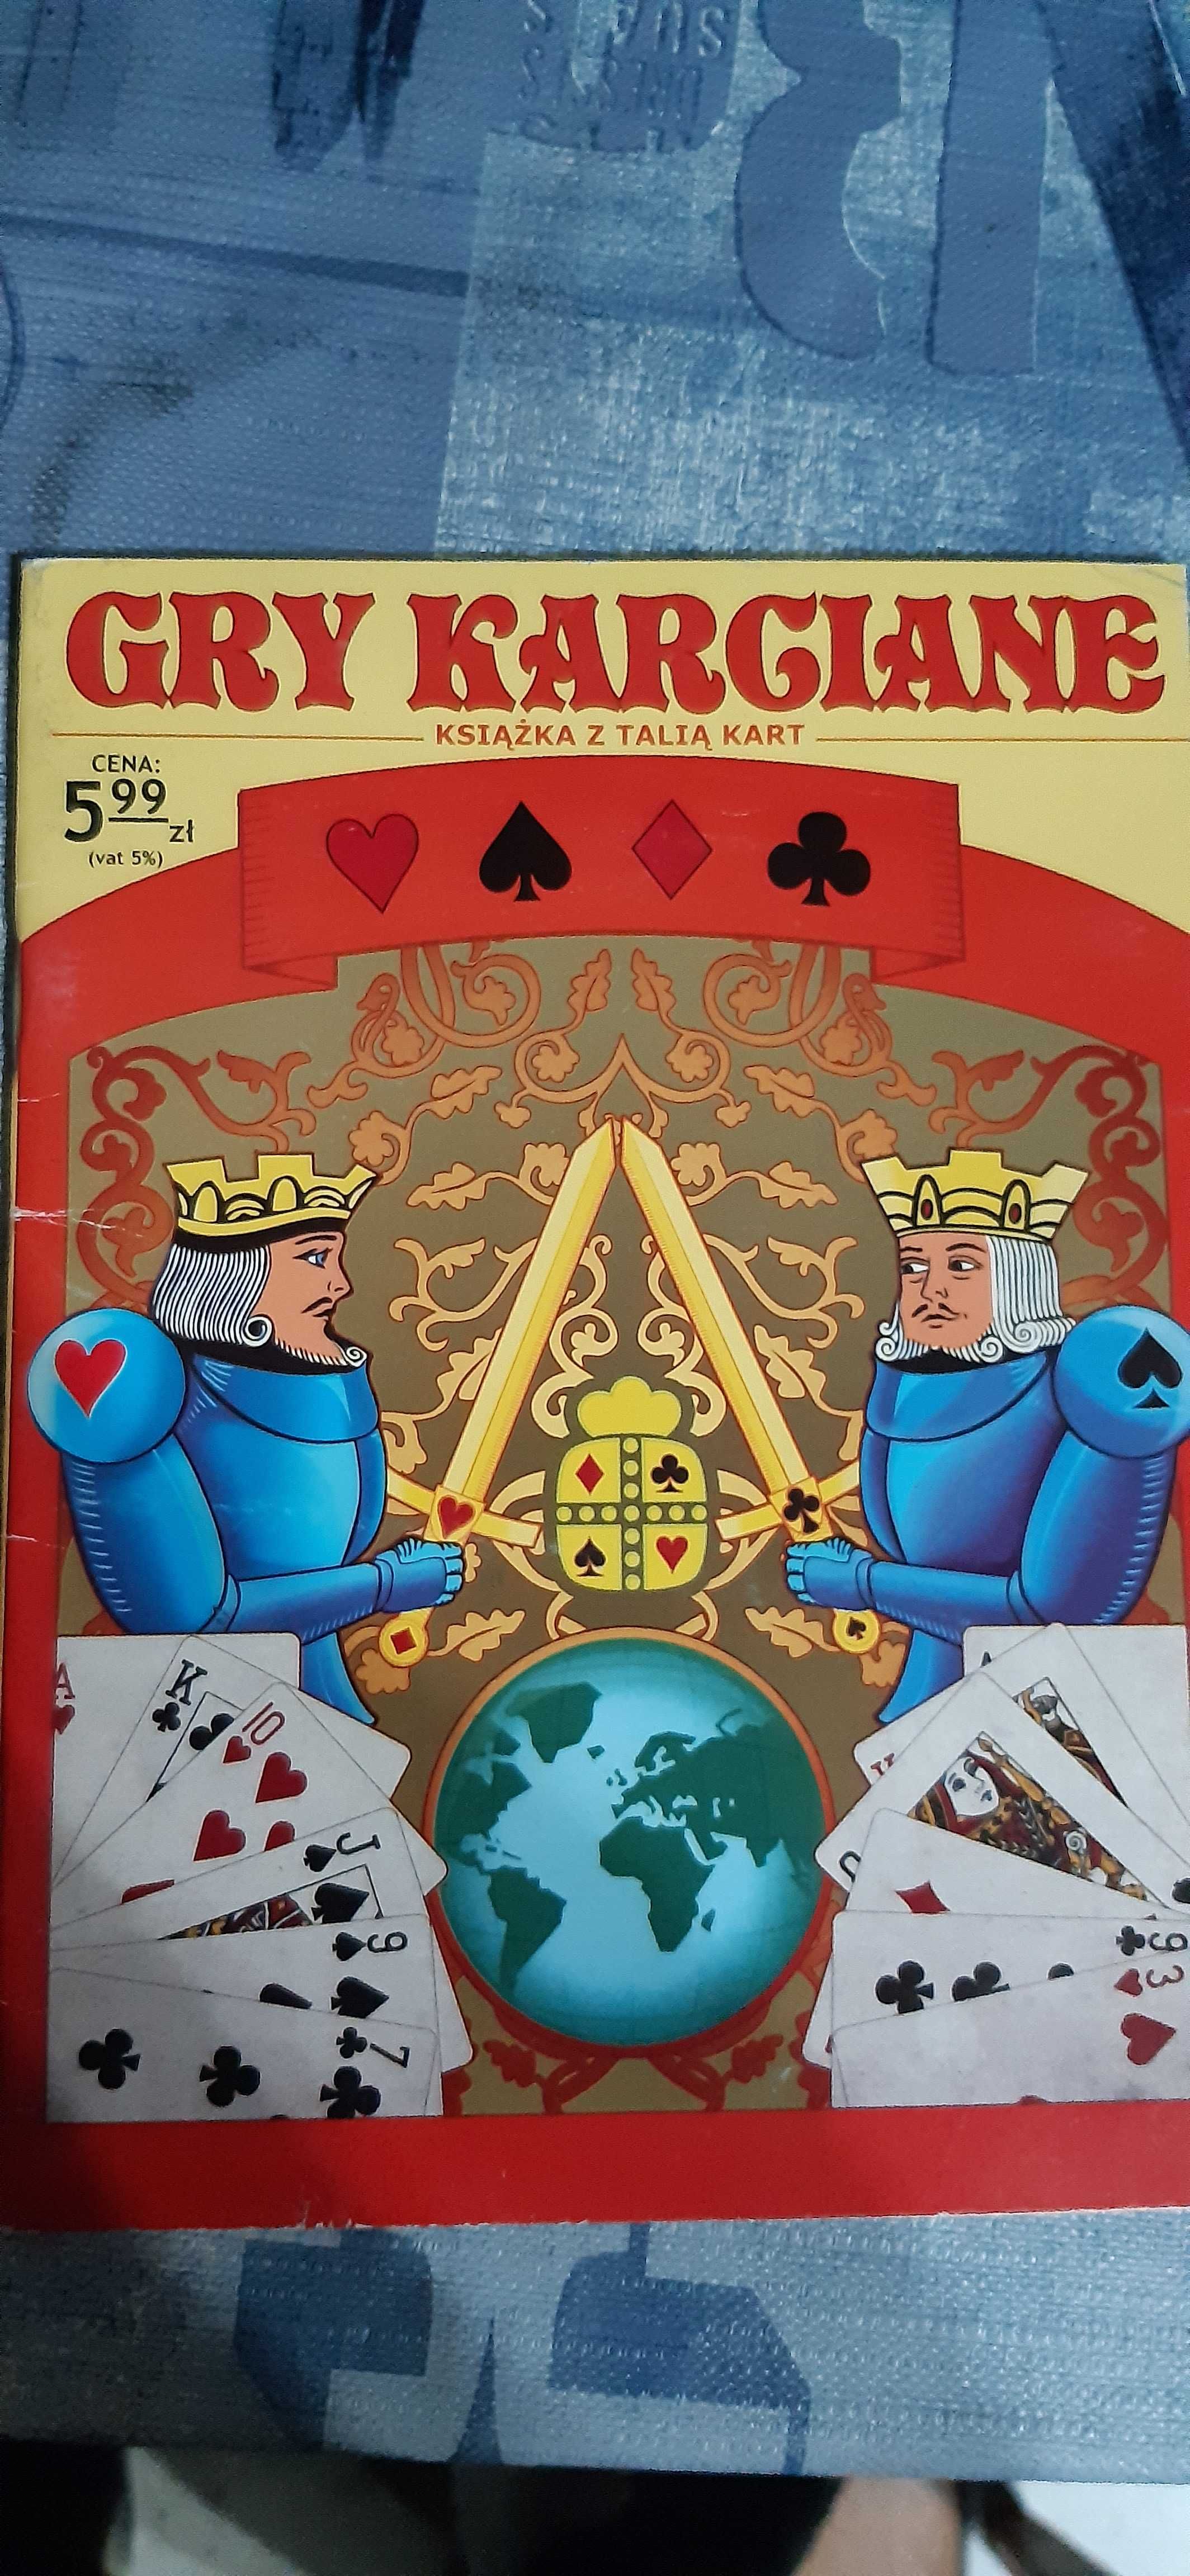 gry karciane, stara książka z talia kart dla kolekcjonerów